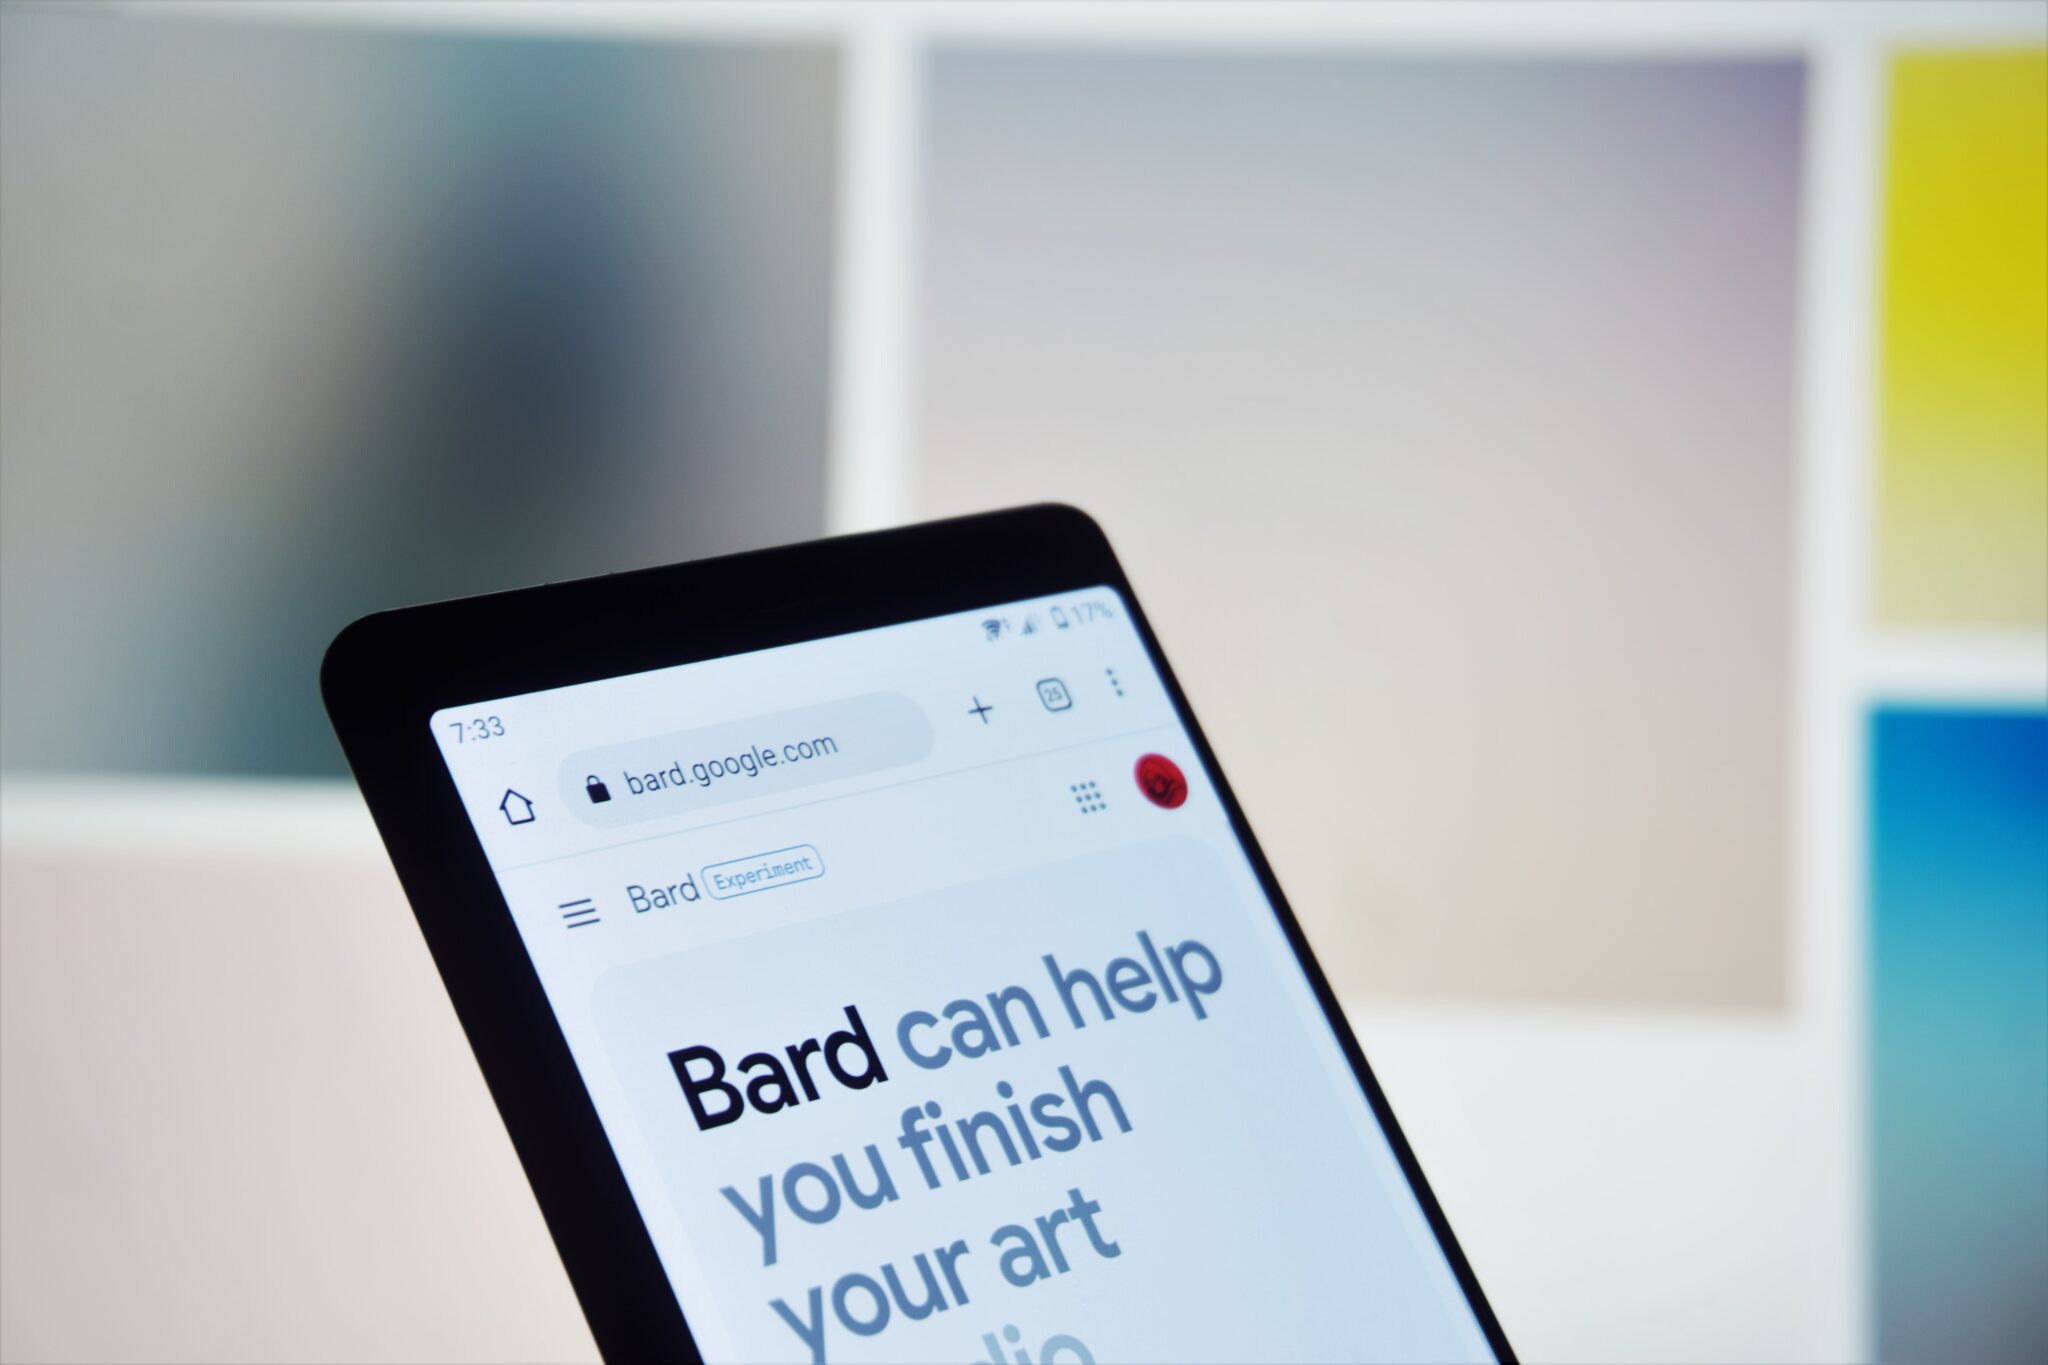 Googles Bard AI on phone screen